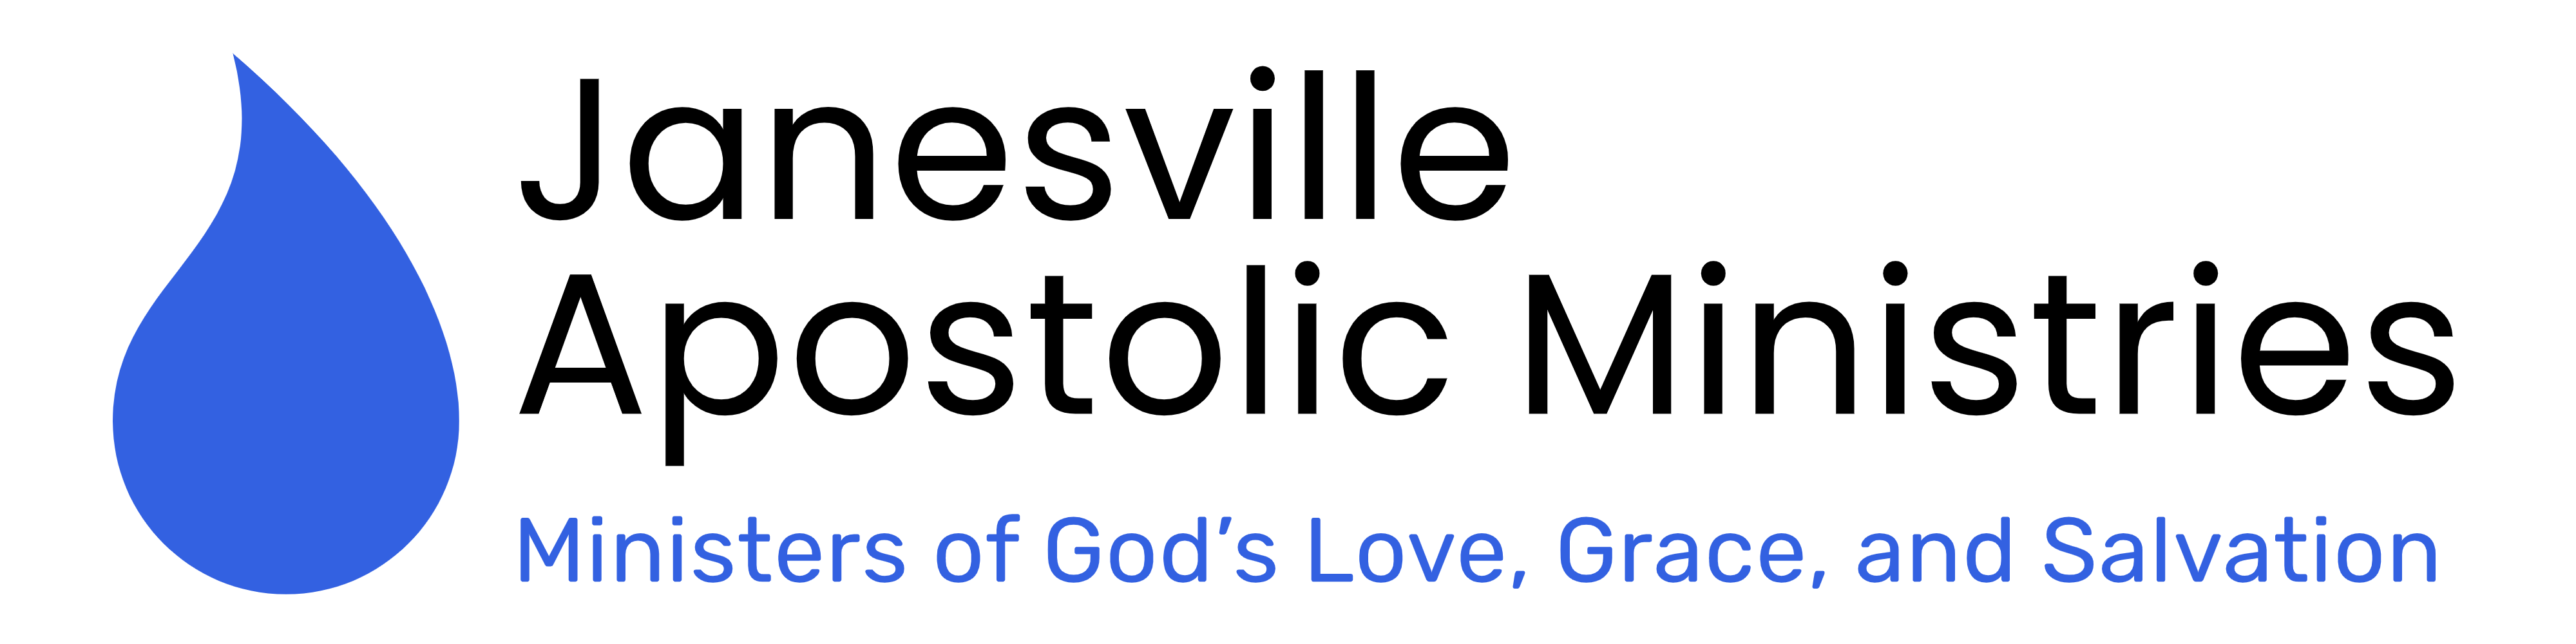 Janesville Apostolic Ministries